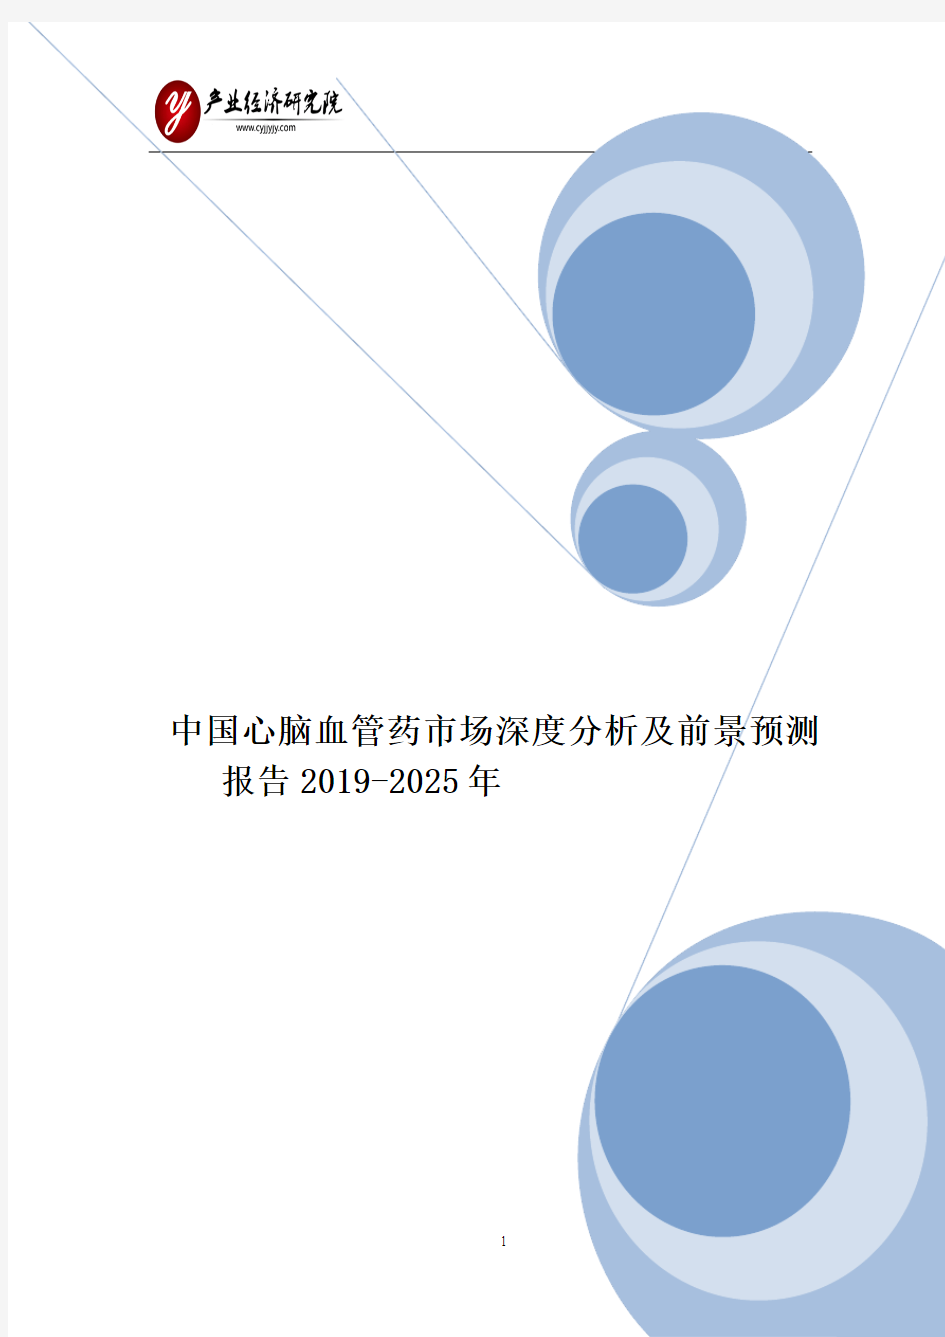 中国心脑血管药市场深度分析及前景预测报告2019-2025年